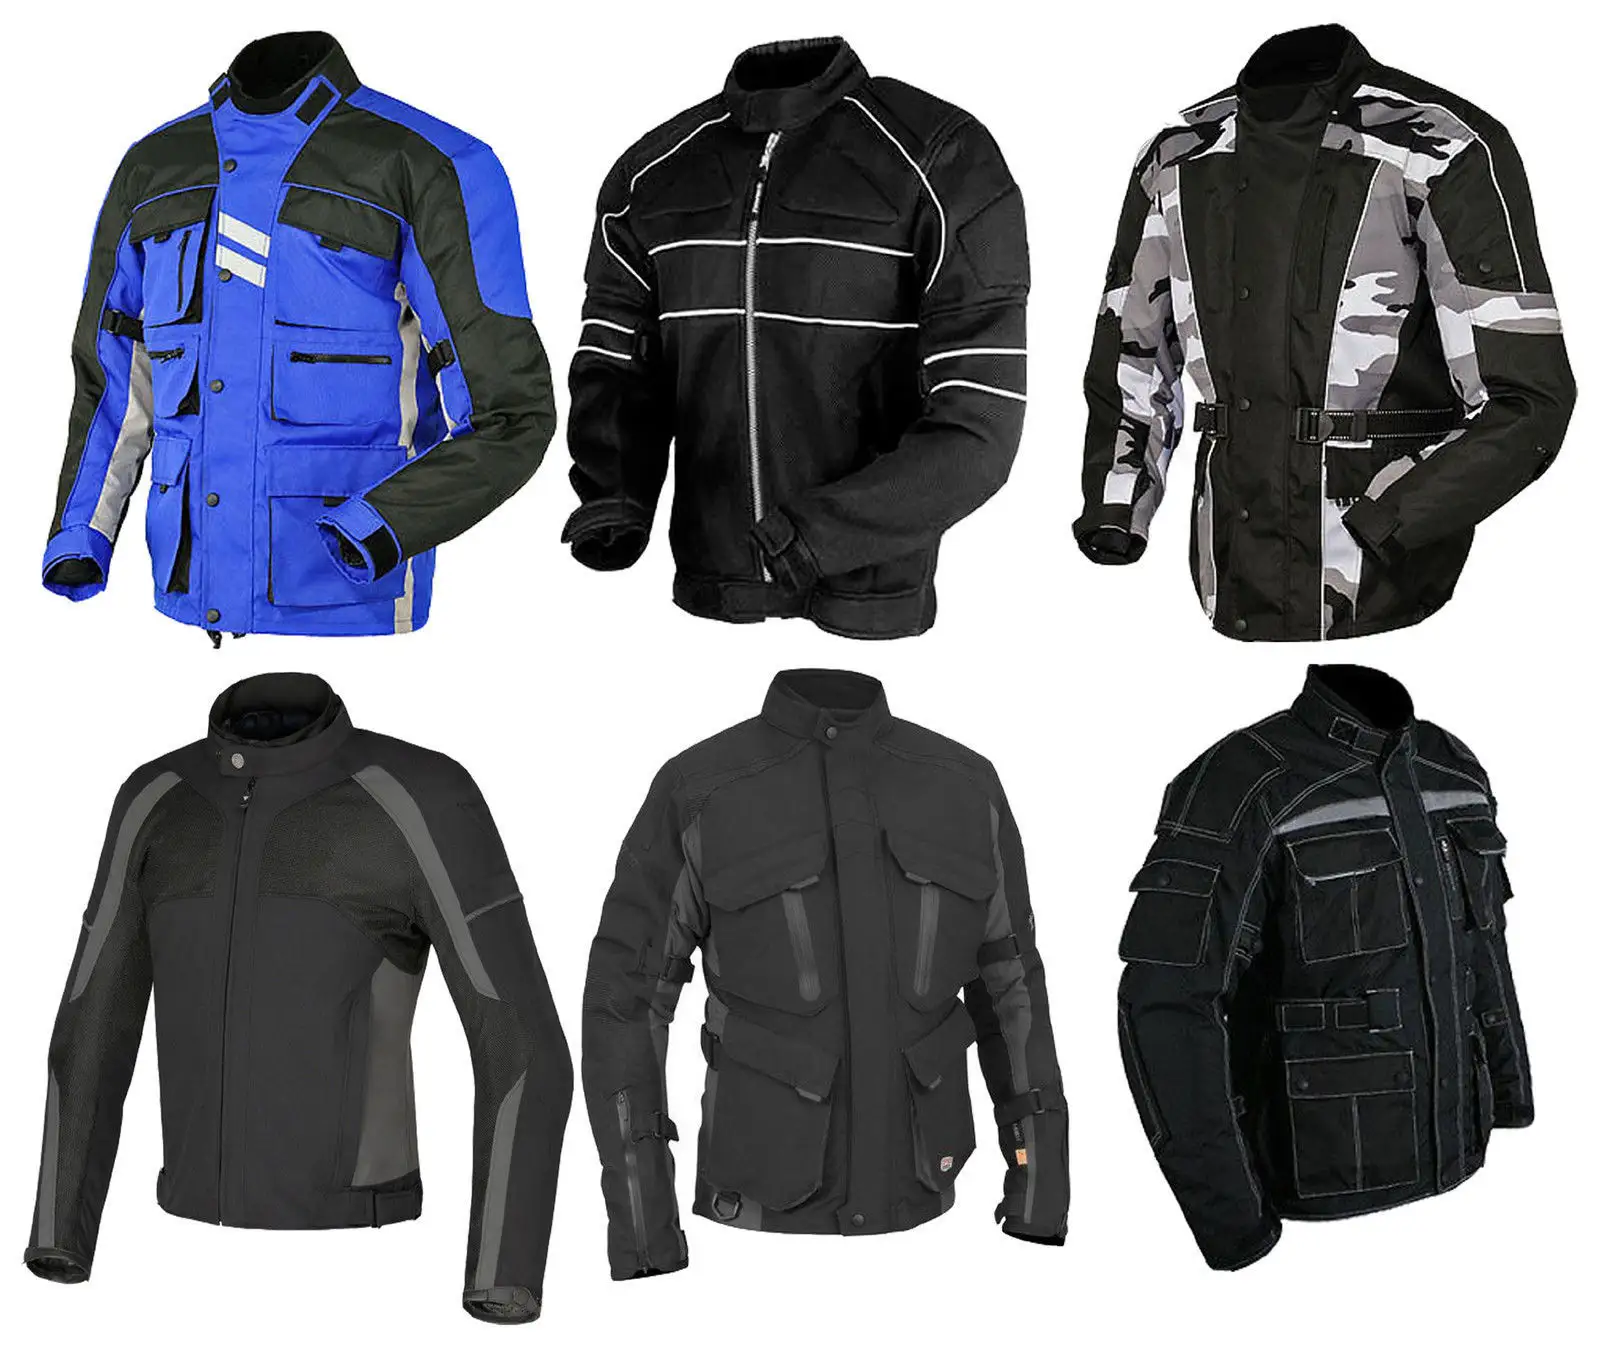 Veste de moto Cordura neuve d'excellente qualité supérieure veste de course de moto en gros avec protection